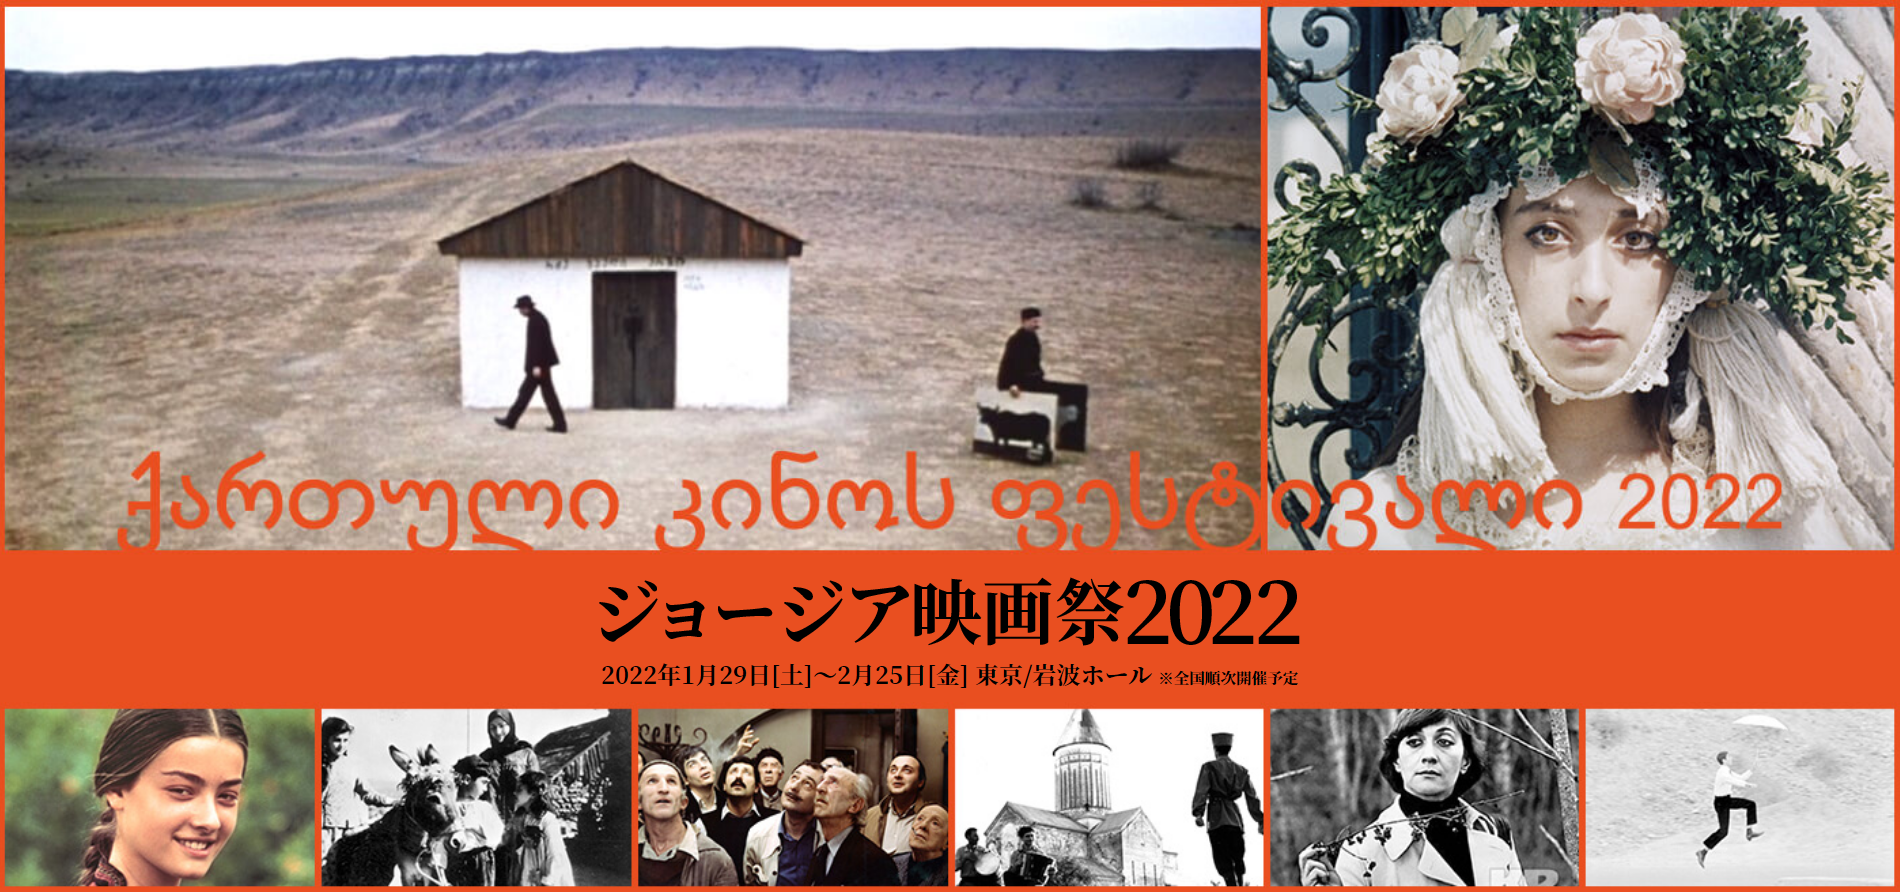 JC3スライド用画像_ジョージア映画祭2022-1900x965